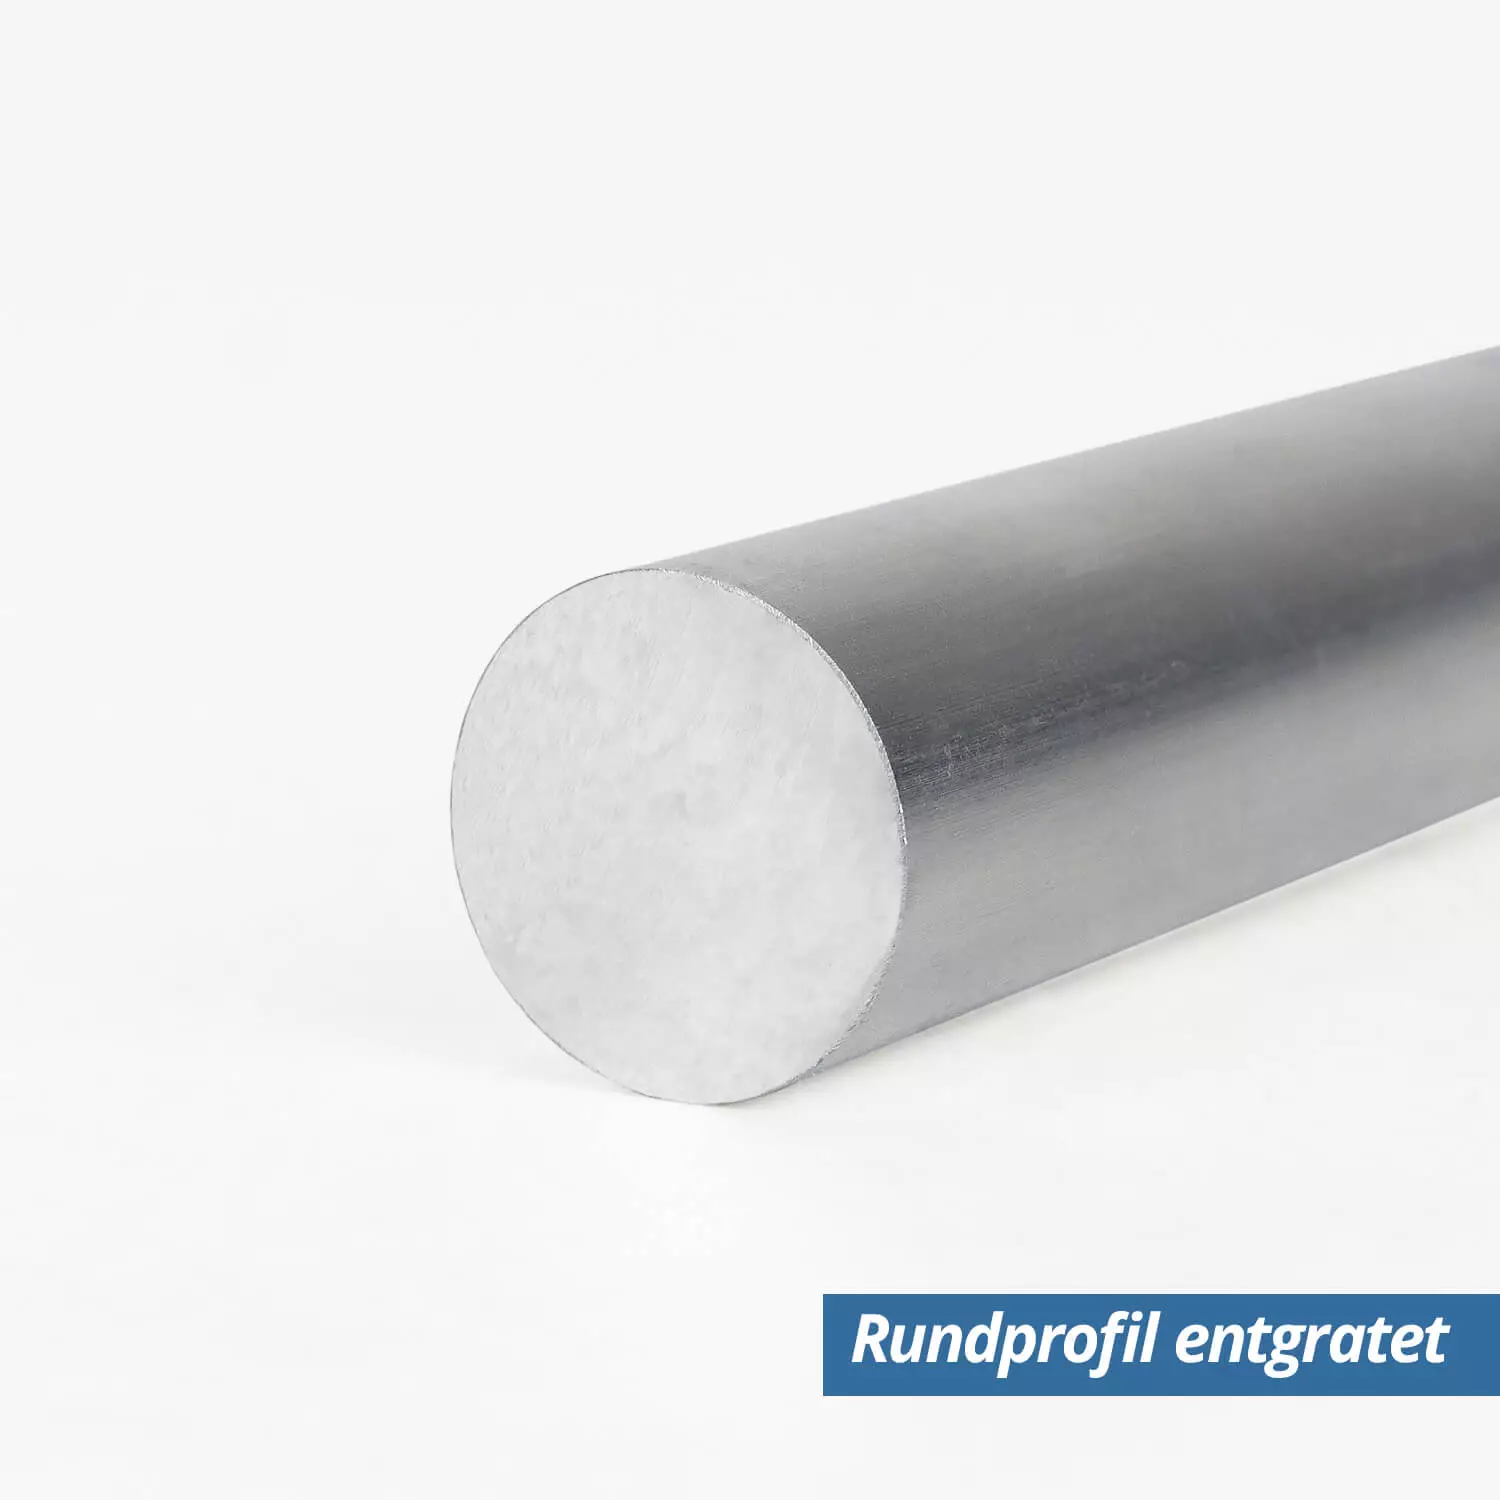 Kaufen Aluminiumrohr 30mm, 65cm für Planenständer - Angebot: 8.67 EUR